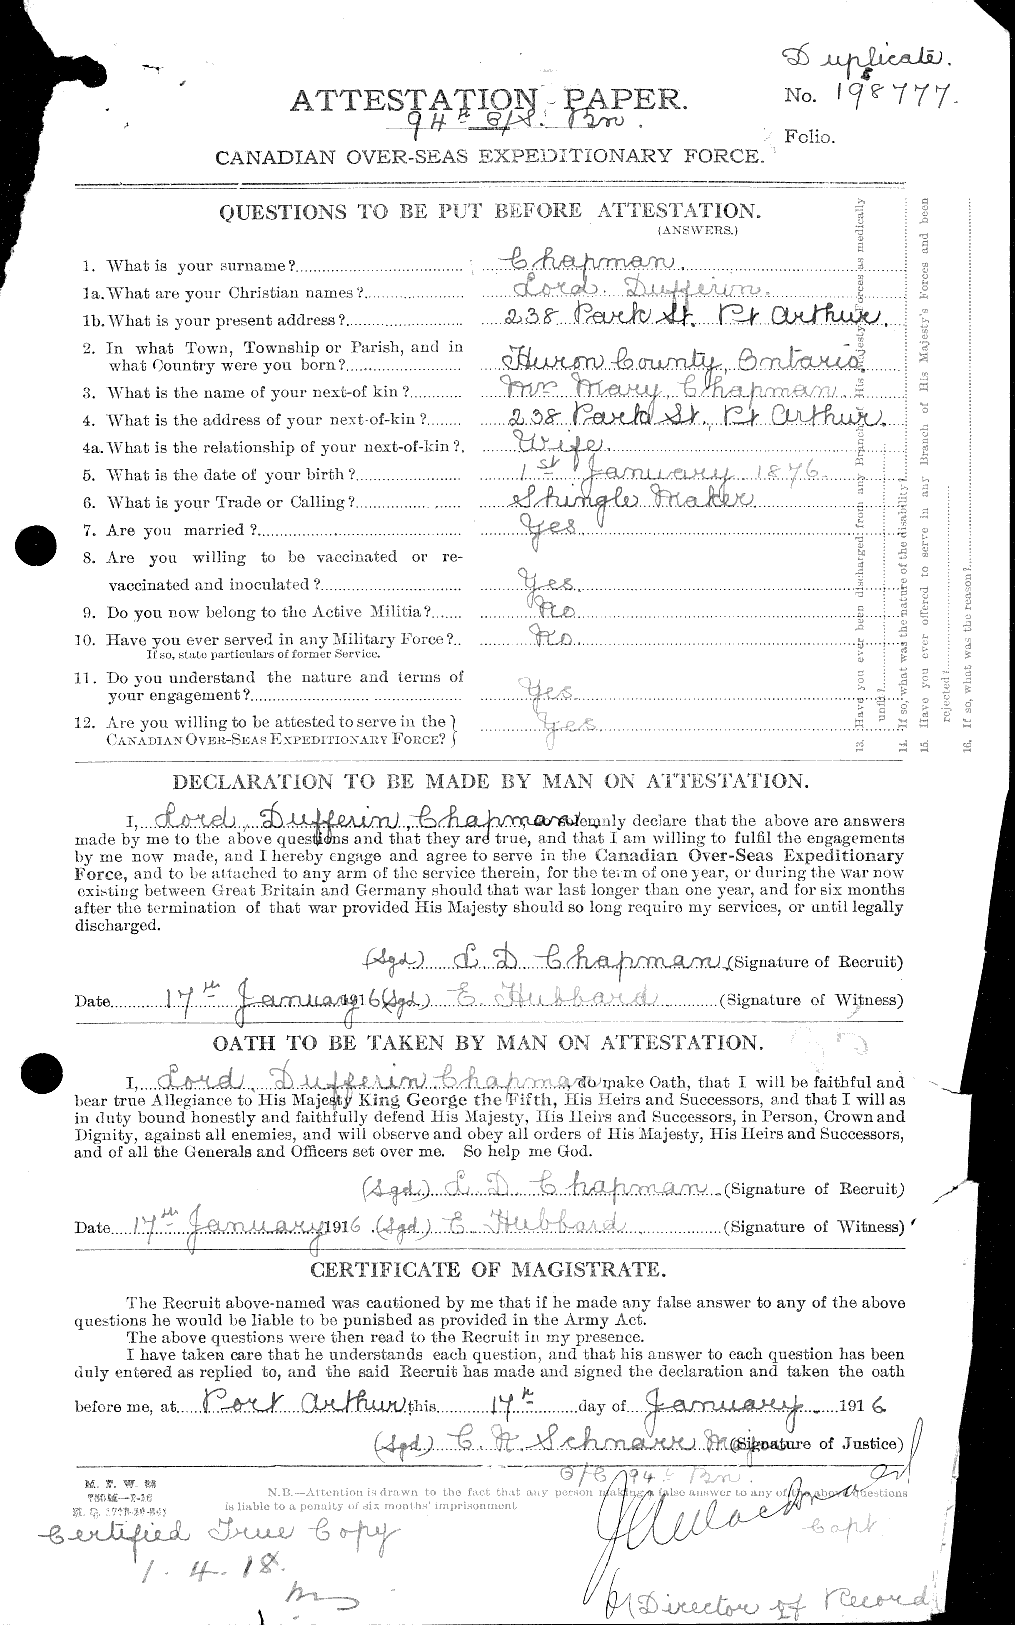 Dossiers du Personnel de la Première Guerre mondiale - CEC 014753a